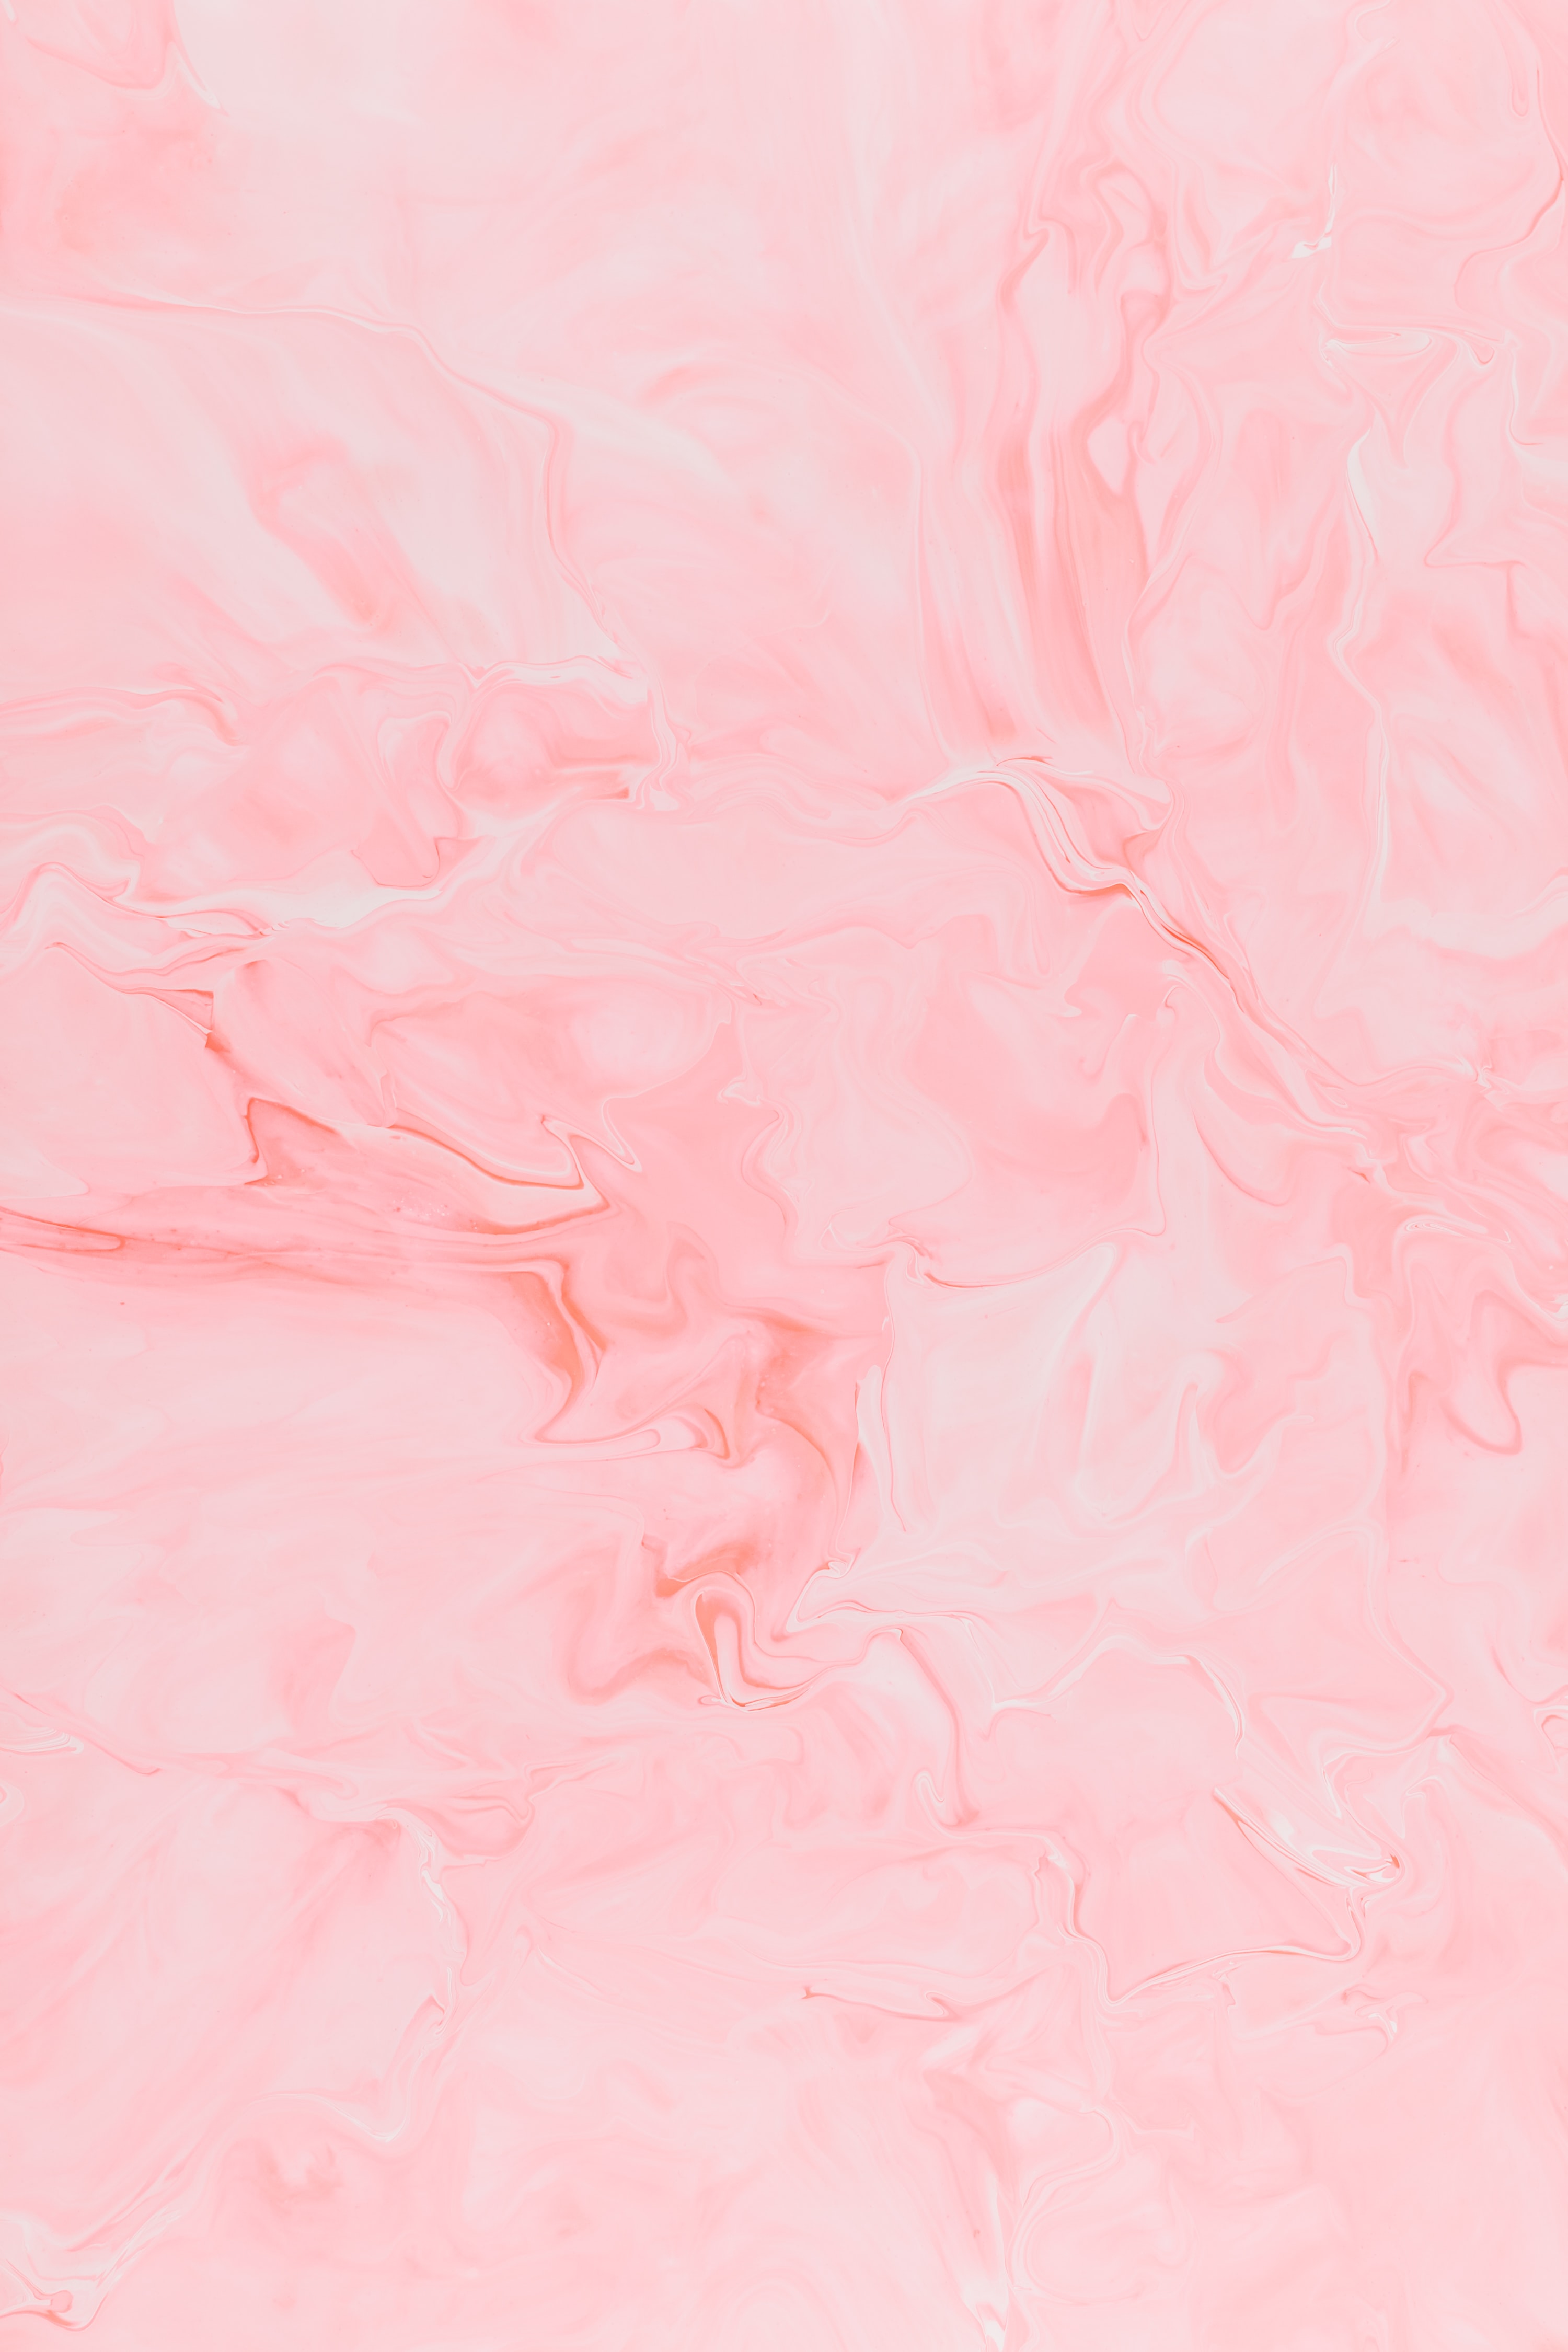 49+ Pastel Pink Background Portrait